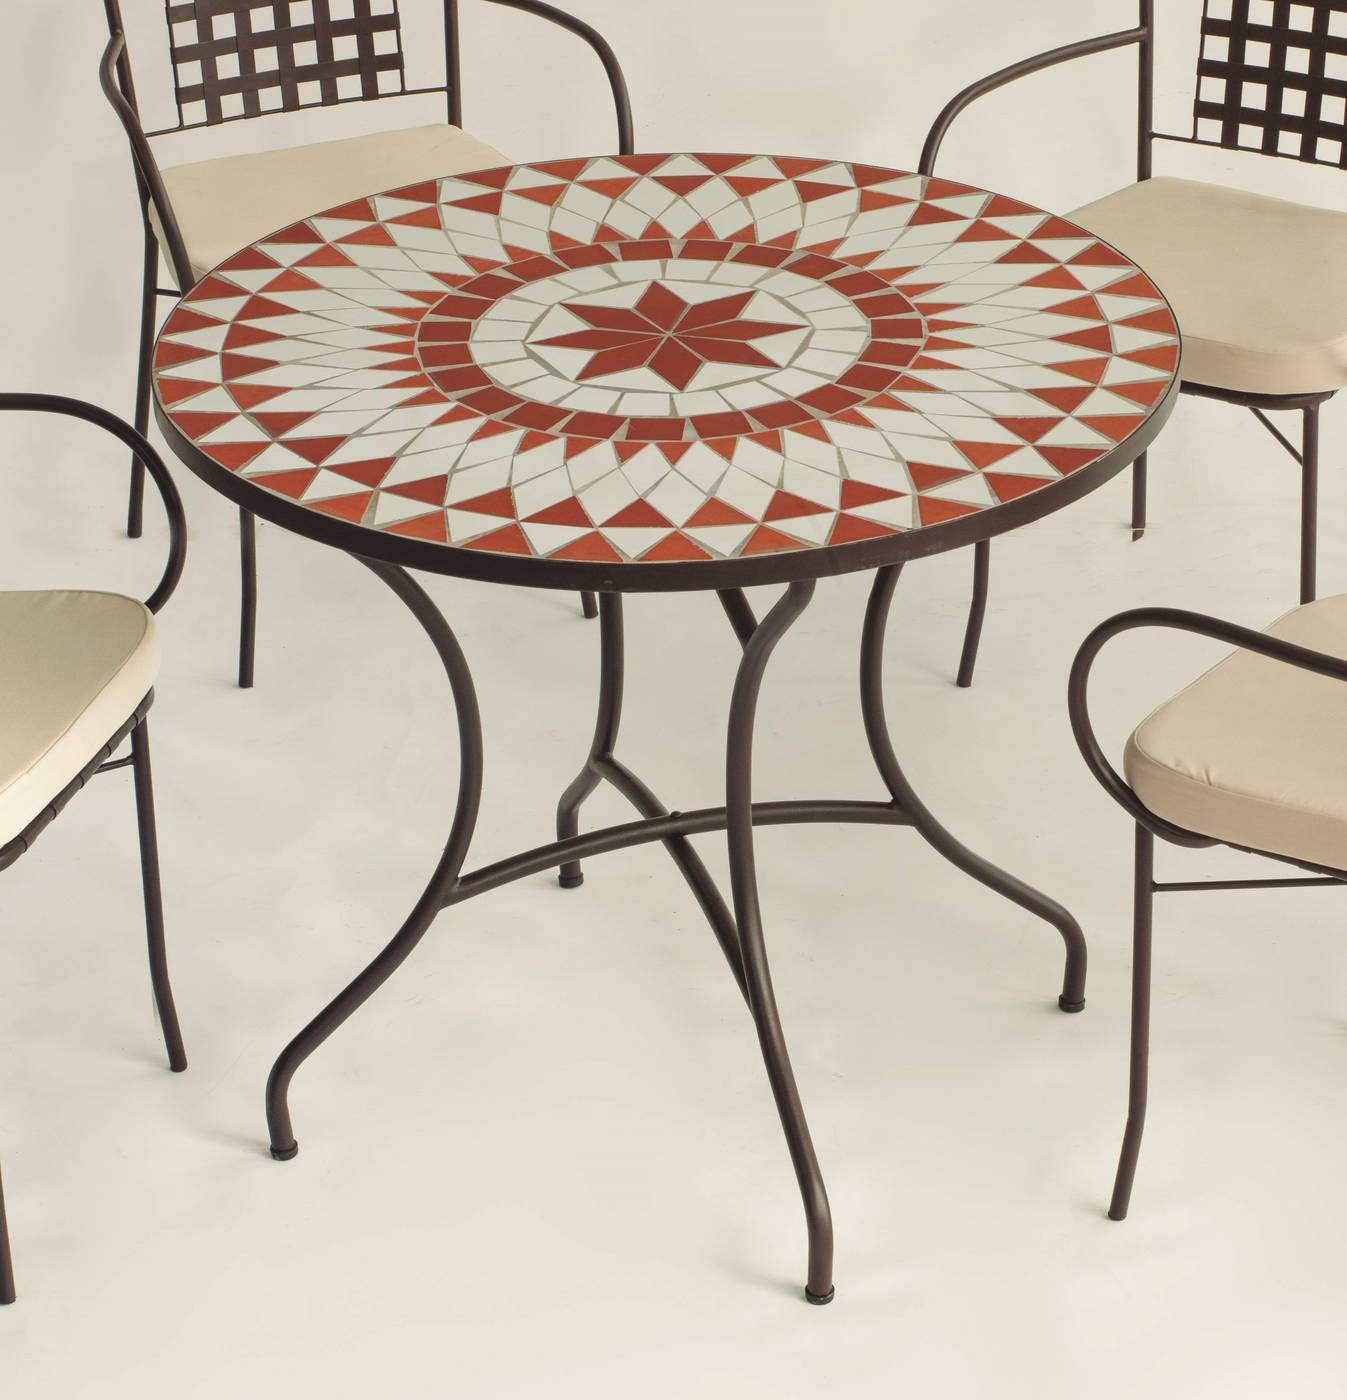 Conjunto Mosaico Neypal90-Vigo - Mesa redonda 90 cm. de acero forjado con tablero mosaico y 4 sillones de forja con cojines